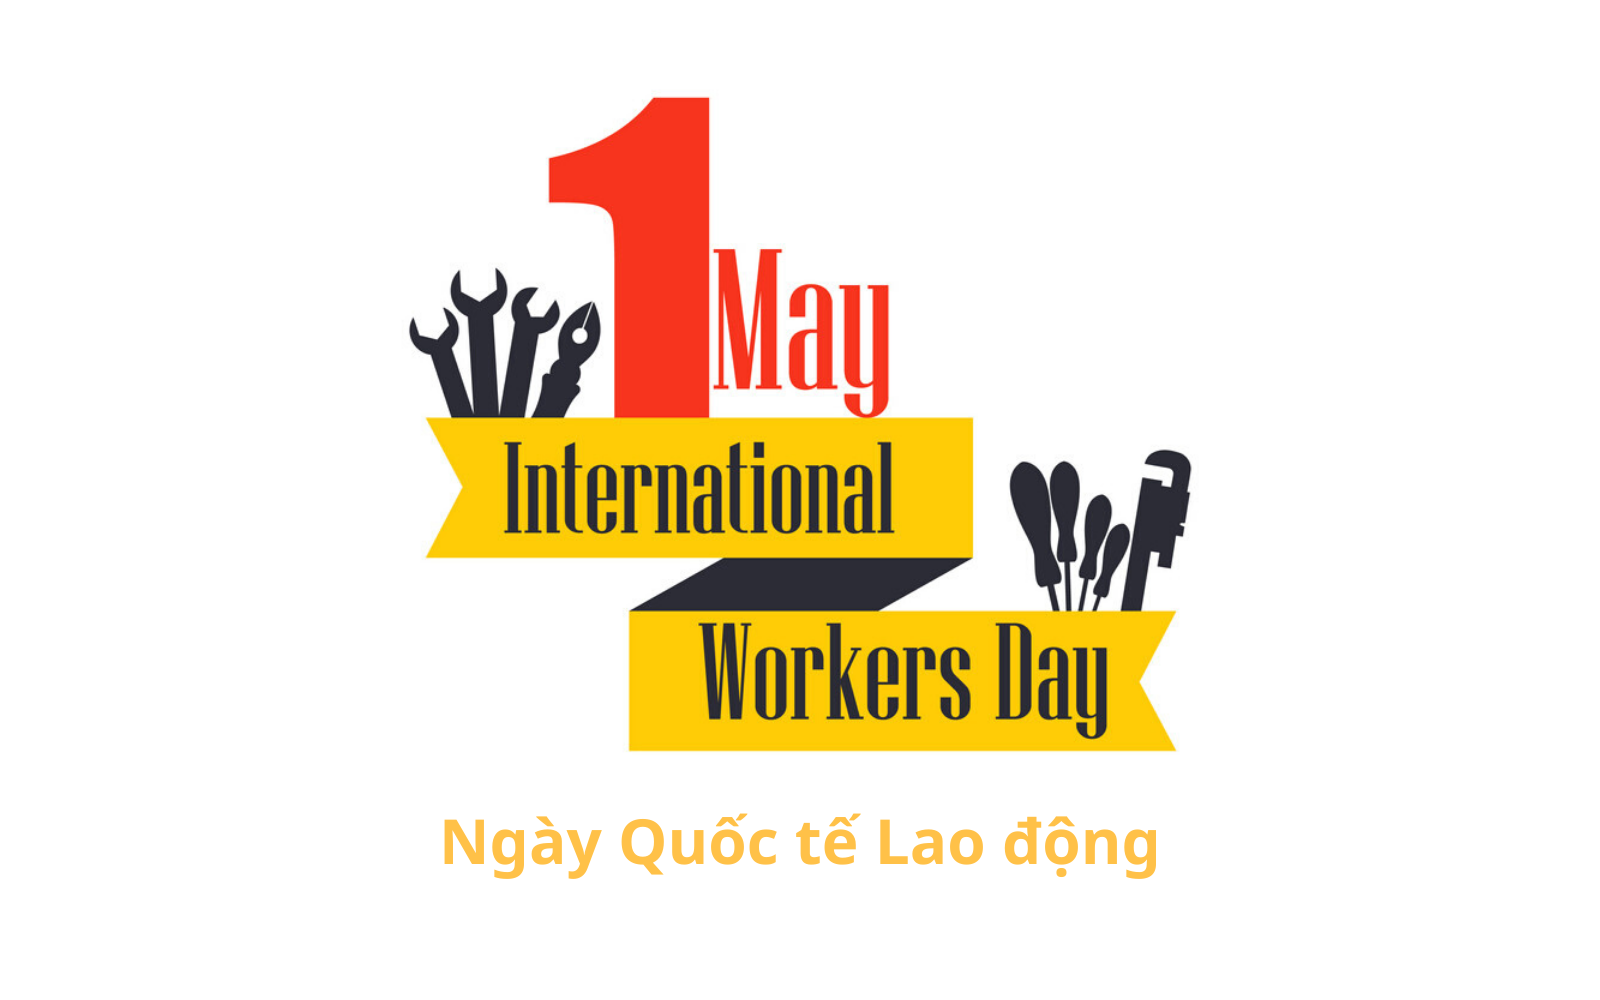 Quốc tế lao động là một ngày lễ phổ biến trên thế giới